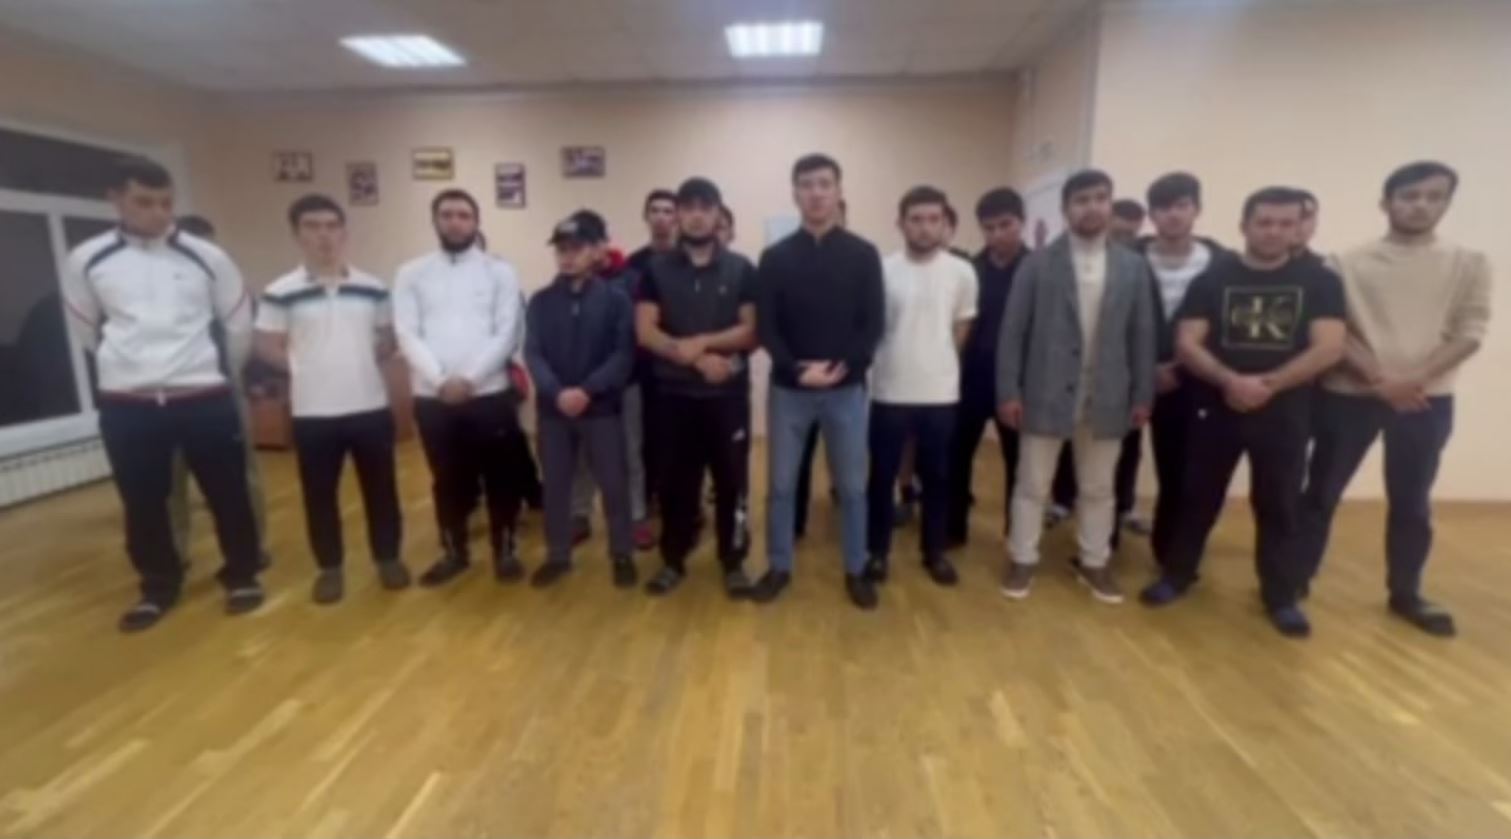 Студенты из Узбекистана обратились к Шавкату Мирзиёеву из-за обстановки в России — видео